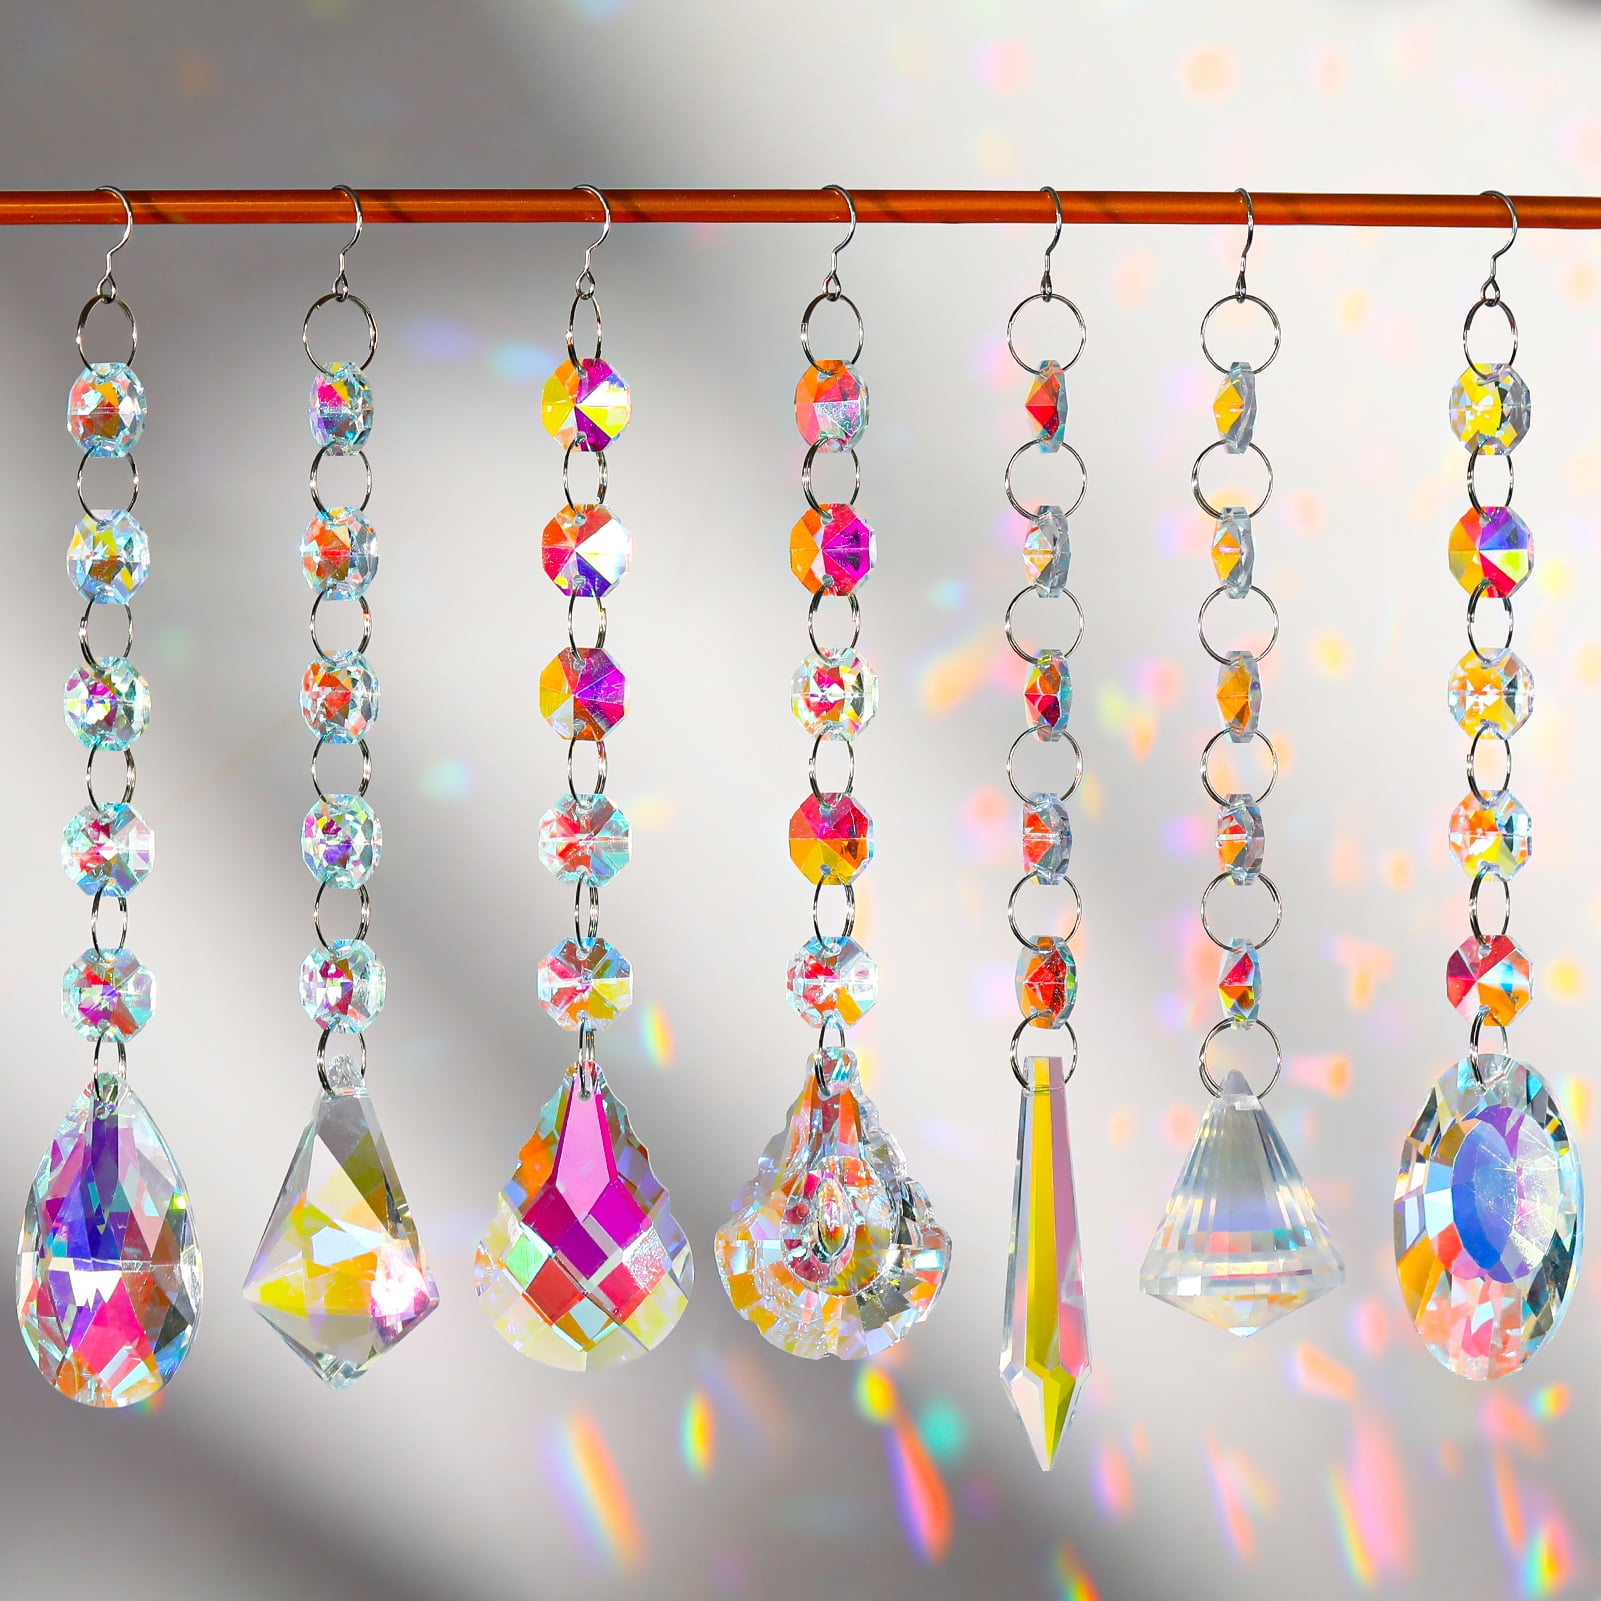 8473円 あなたにおすすめの商品 10 Pieces Crystals Suncatcher Hanging Sun Catcher Garden P